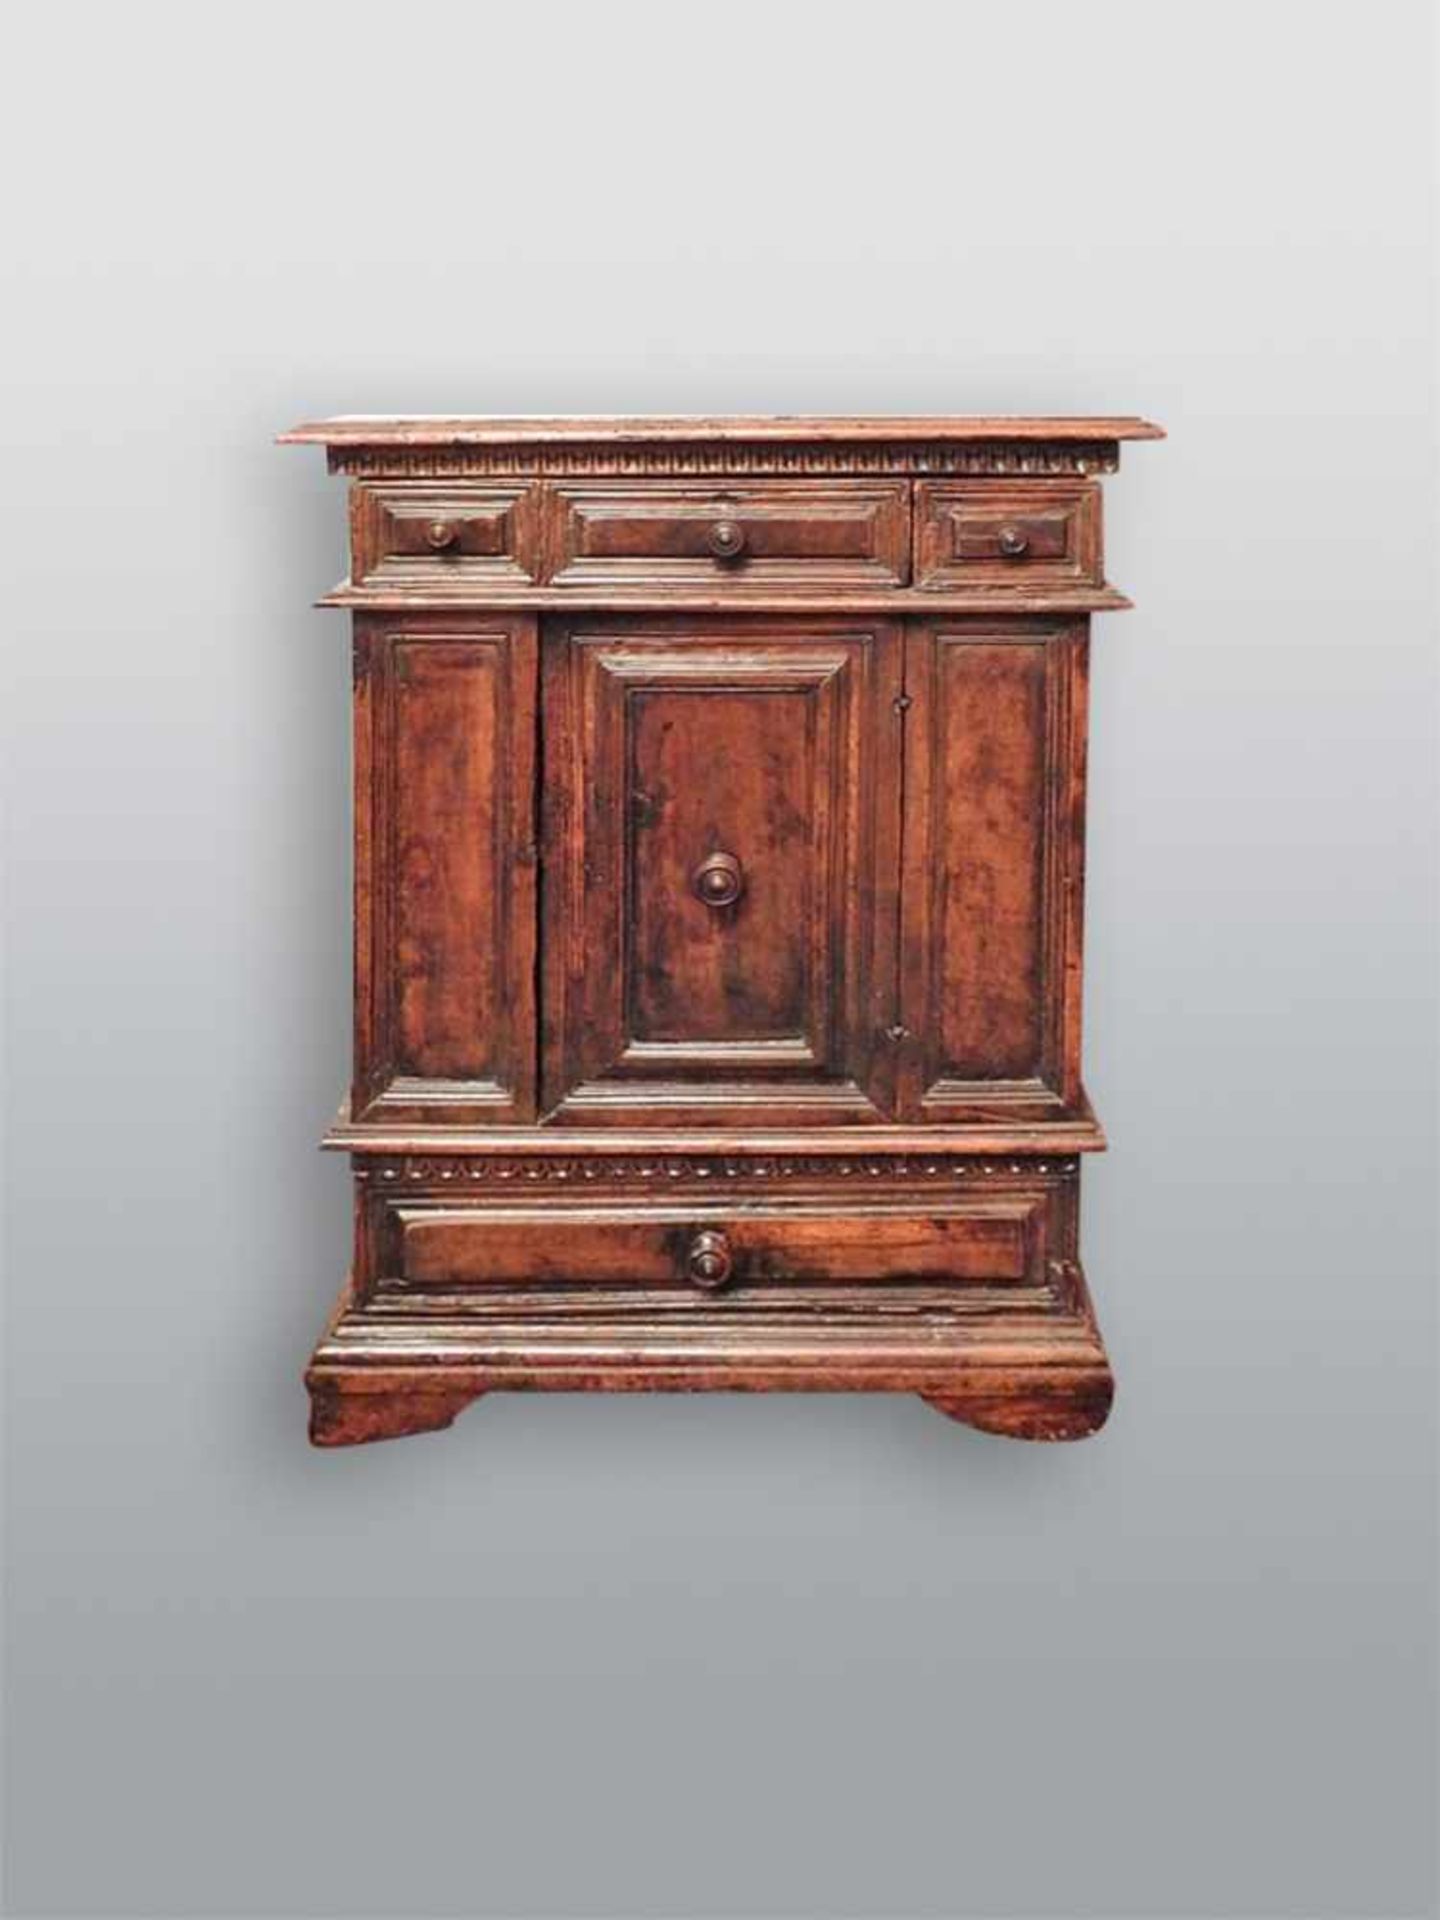 Lombardischer Halbschrank Maronen-Holz. Italien, um 1650. H x B x T ca. 95 x 70 x 38 cm